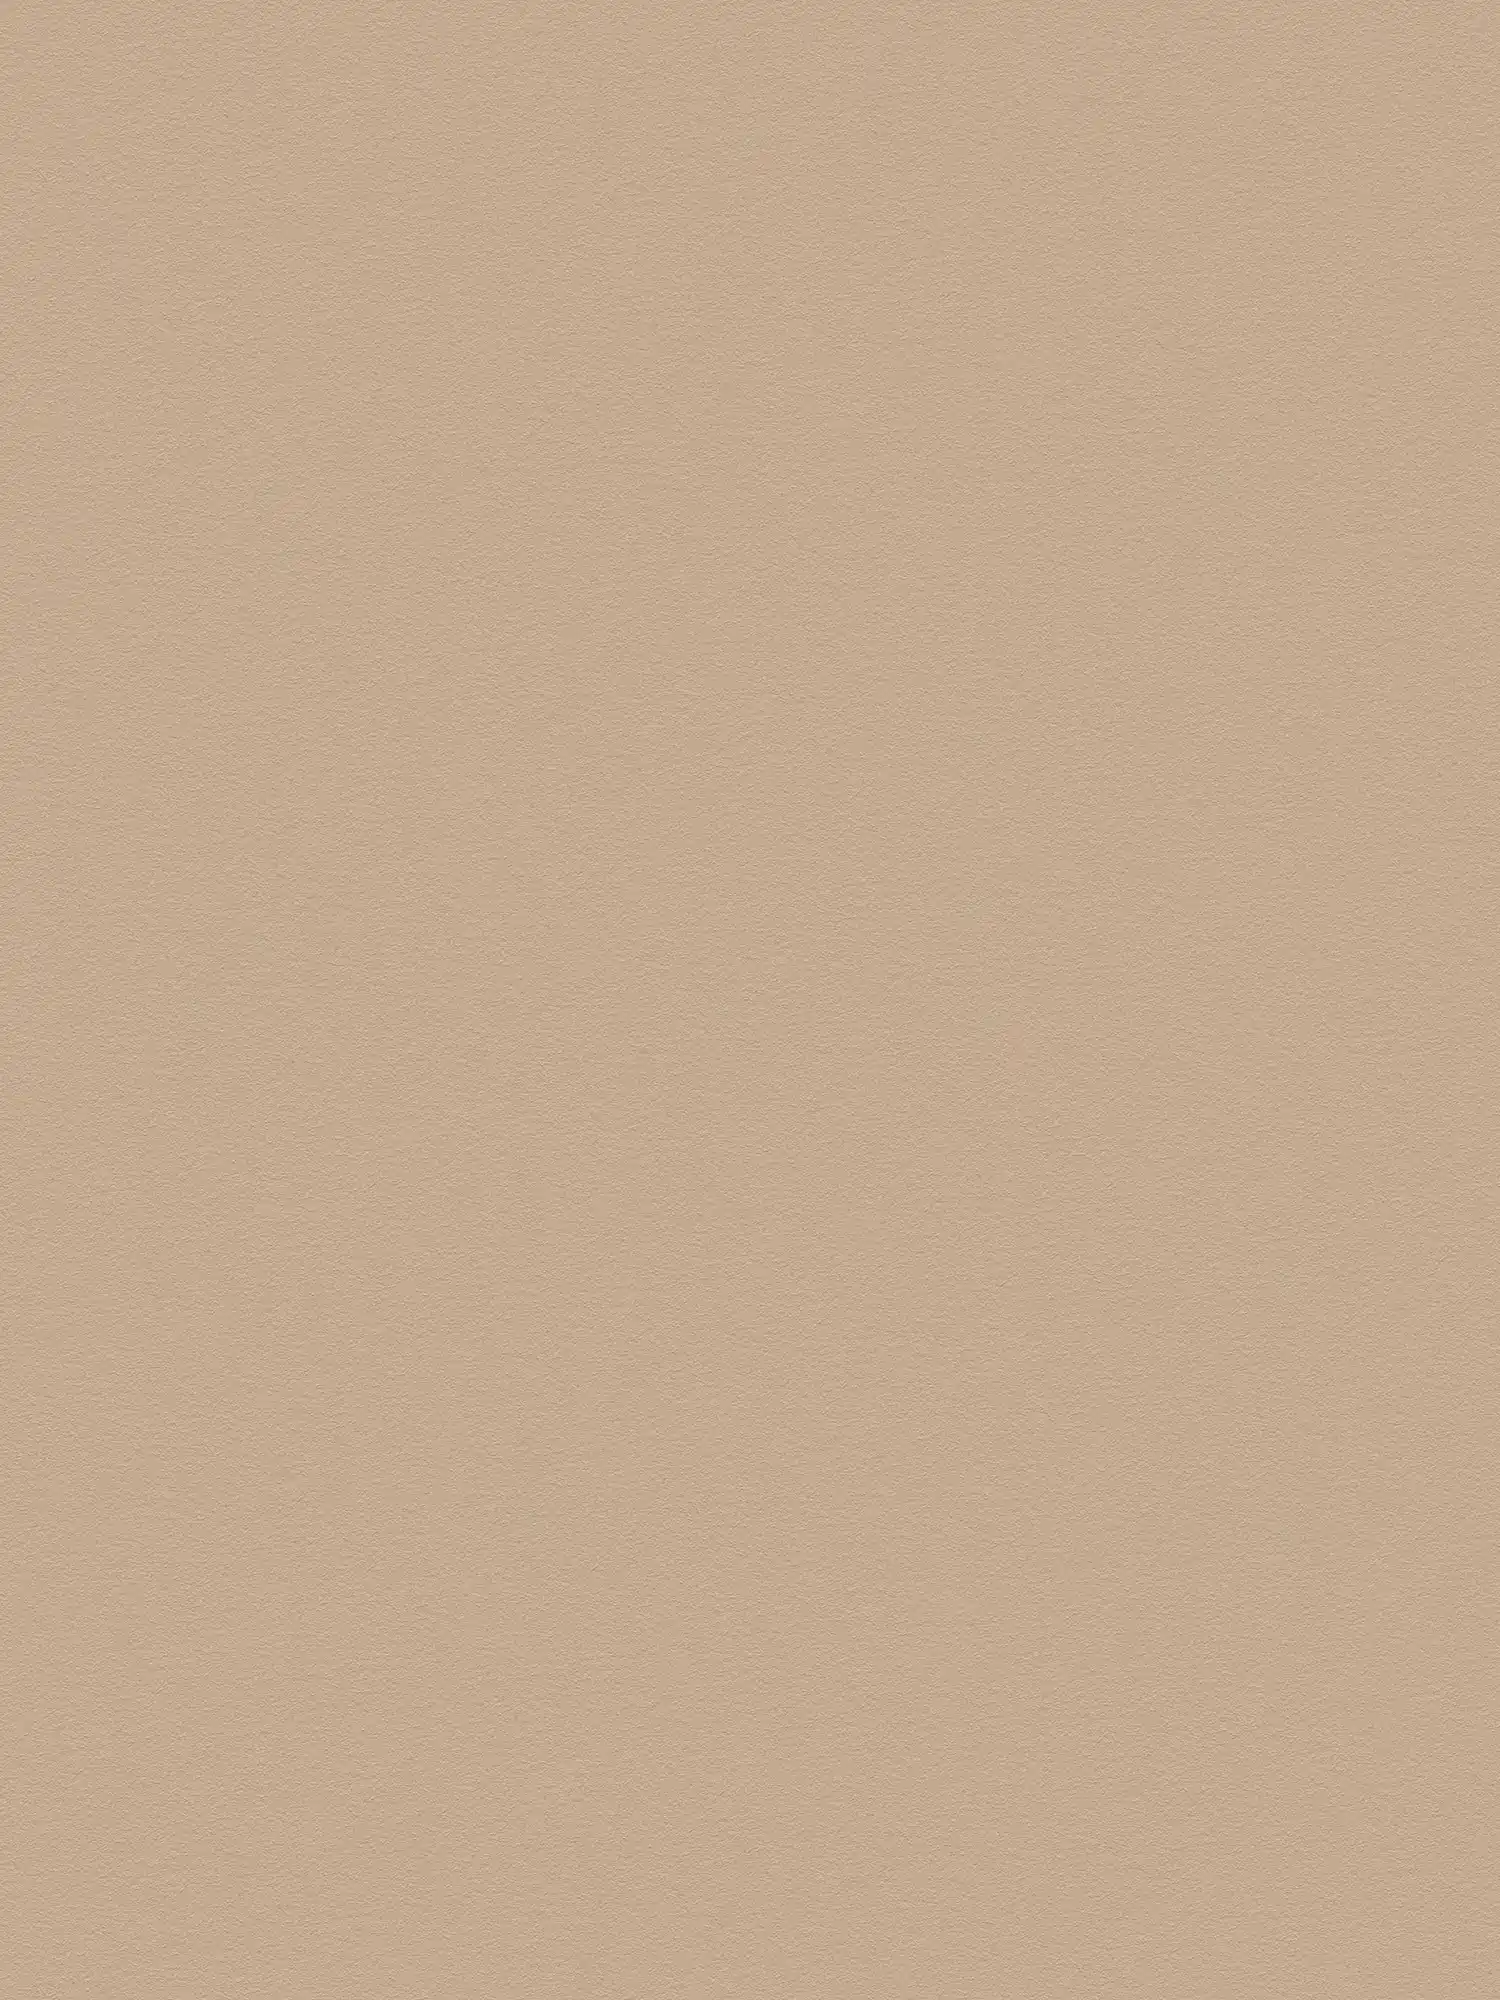 Einfarbige Tapete Hellbraun mit glatter Oberfläche – Beige, Braun
